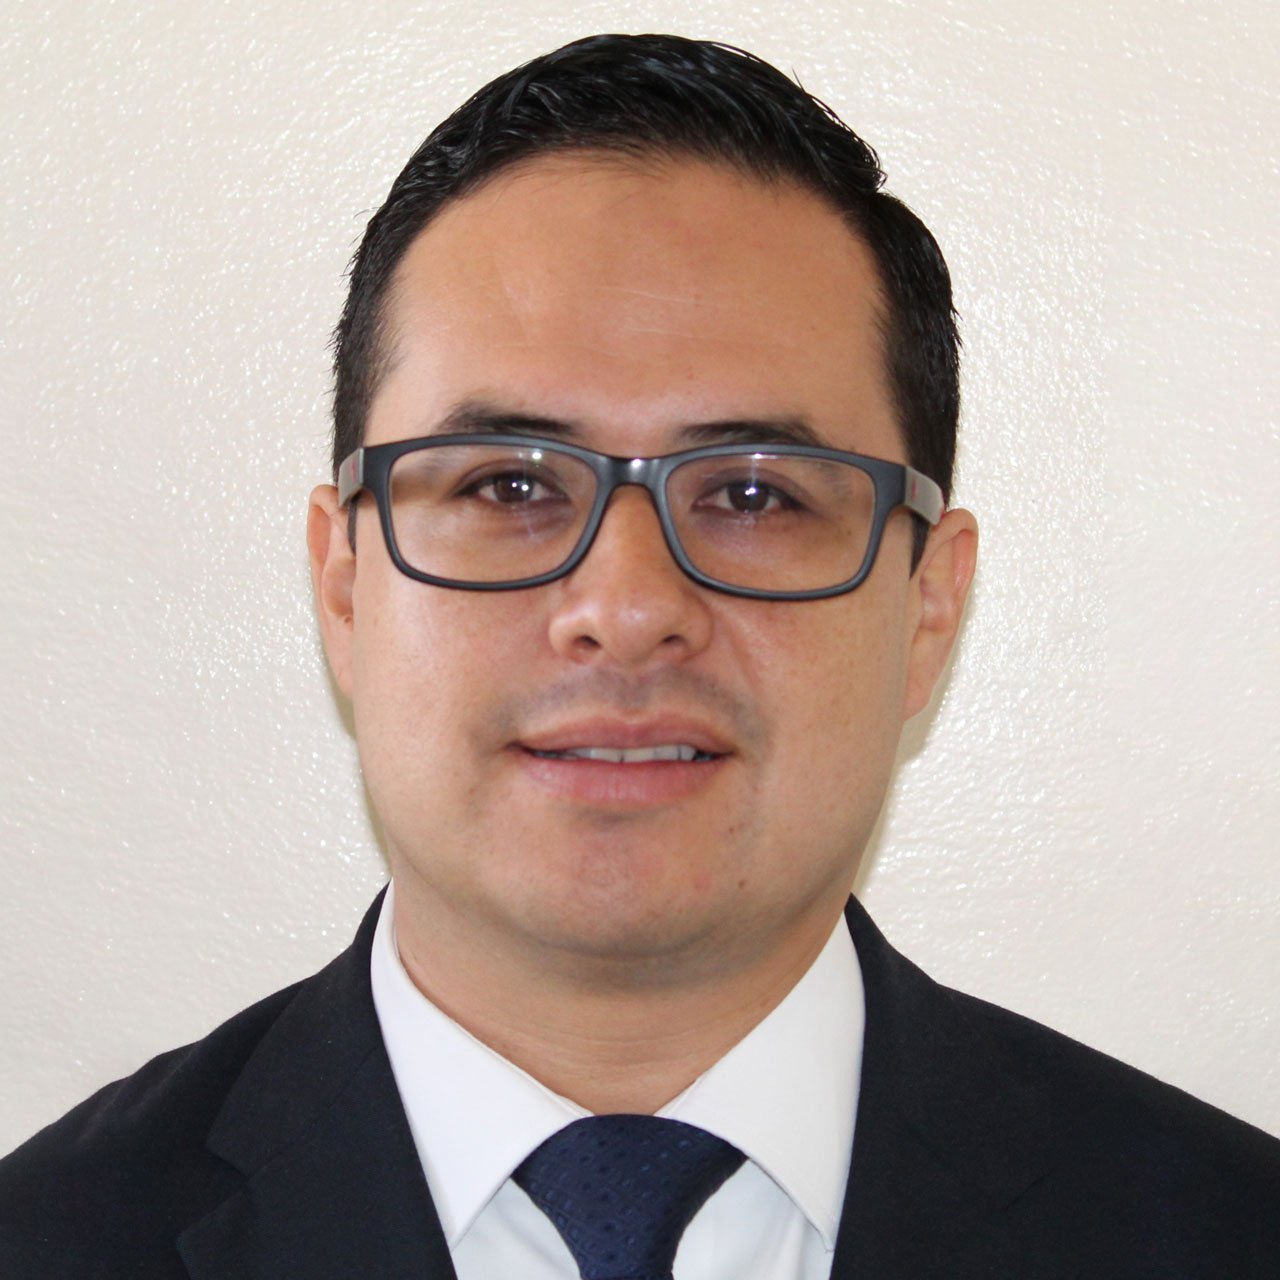 Ohtli Lisaardo Enríquez González | Subdirección General en Instituto Científico Motolinía de Xalapa